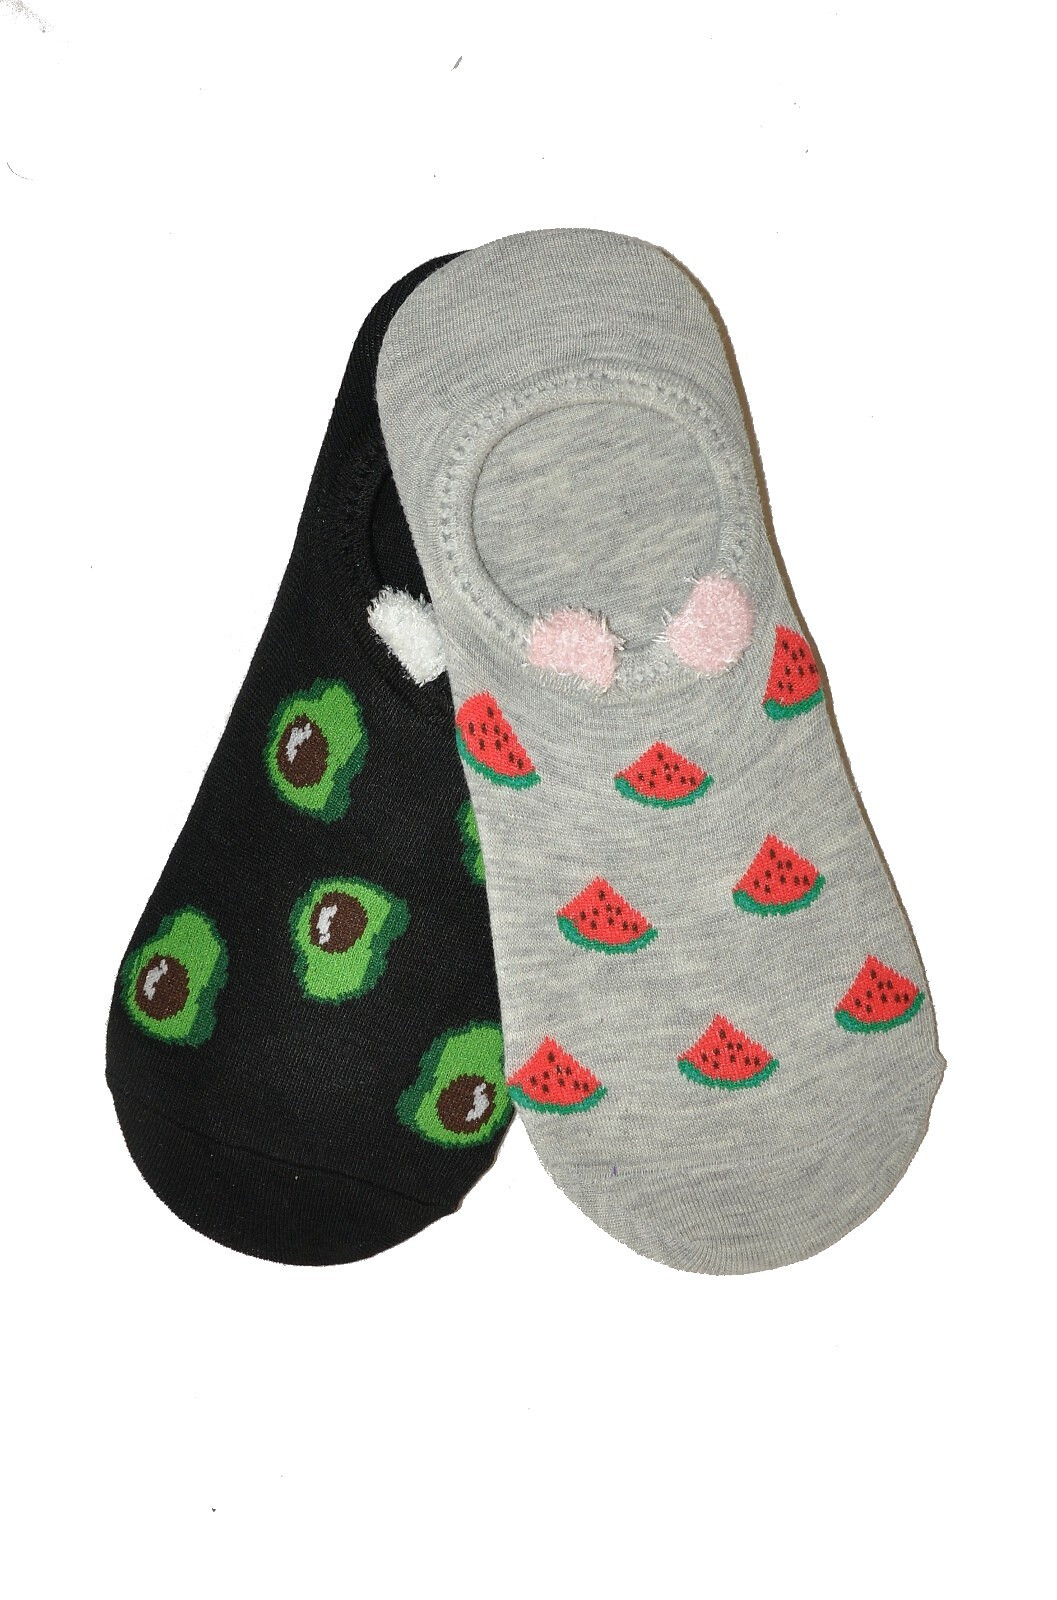 Dámské ponožky baleríny WiK 0144 Midini Ovoce A'2 36-41 směs barev 39-41